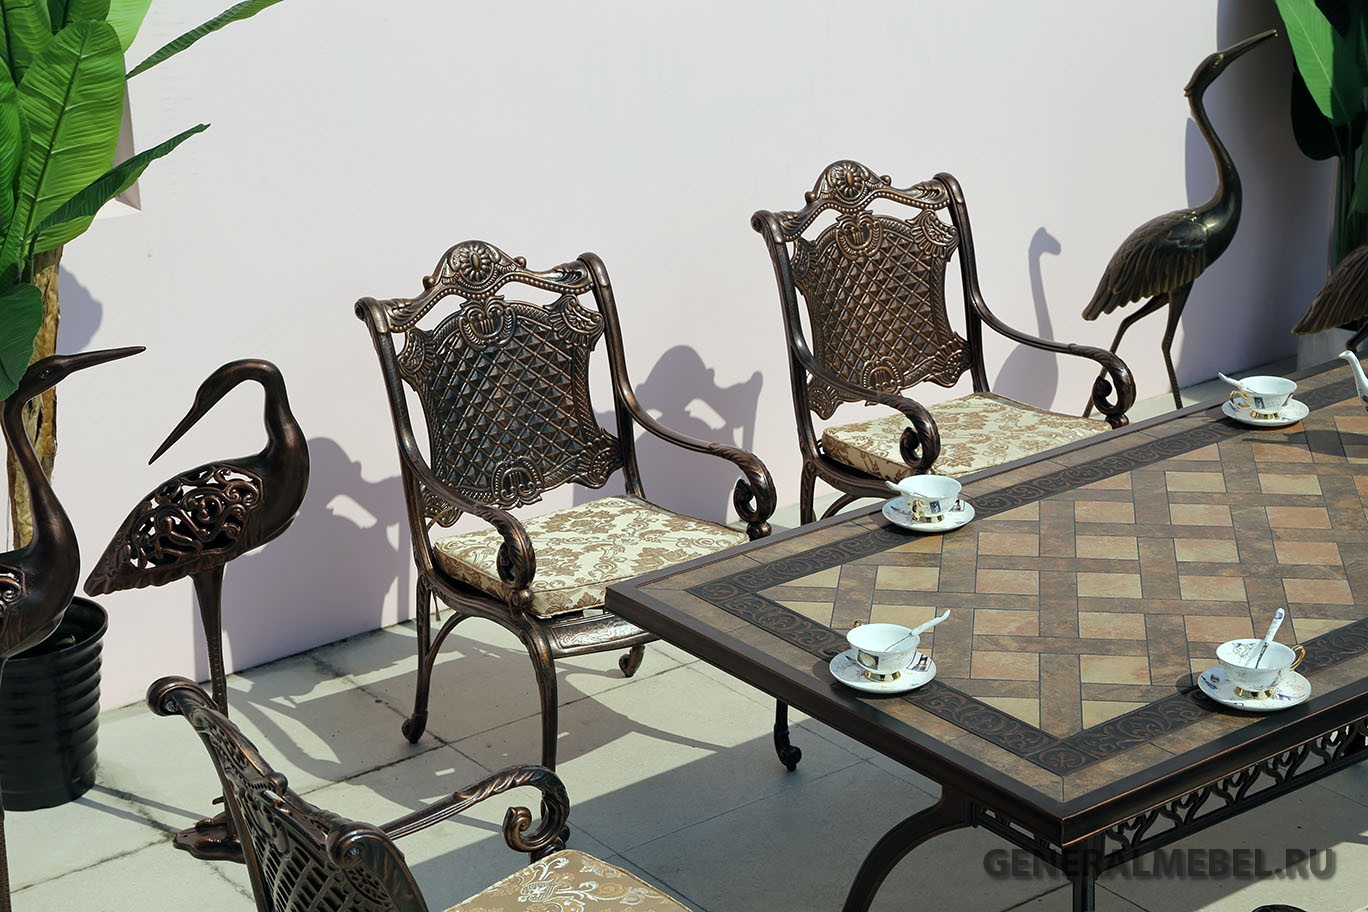 Элитная мебель из металла, обеденный комплект мебели, стол с камнем из литого алюминия для столовой, стол с мозаикой обеденный, мебель из металла для кафе и ресторанов, чугунные столы и стулья